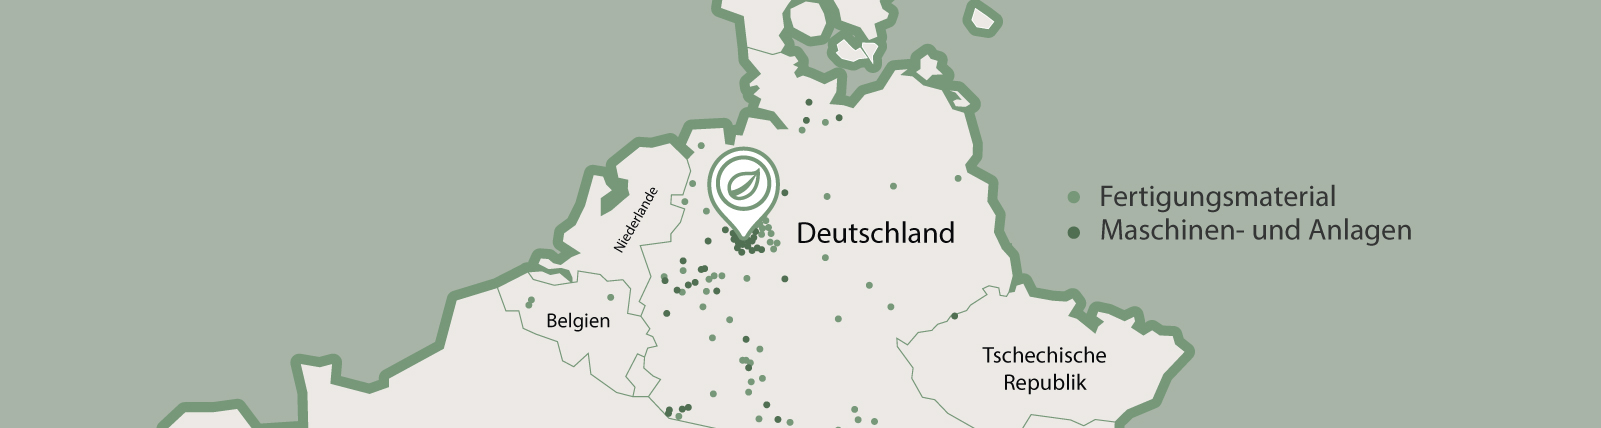 Interaktive Karte, die wichtige Industrieregionen für die Herstellung von Materialien und Maschinen in Deutschland hervorhebt, mit leicht lesbaren Symbolen und Beschriftungen für eine benutzerfreundliche Navigation.